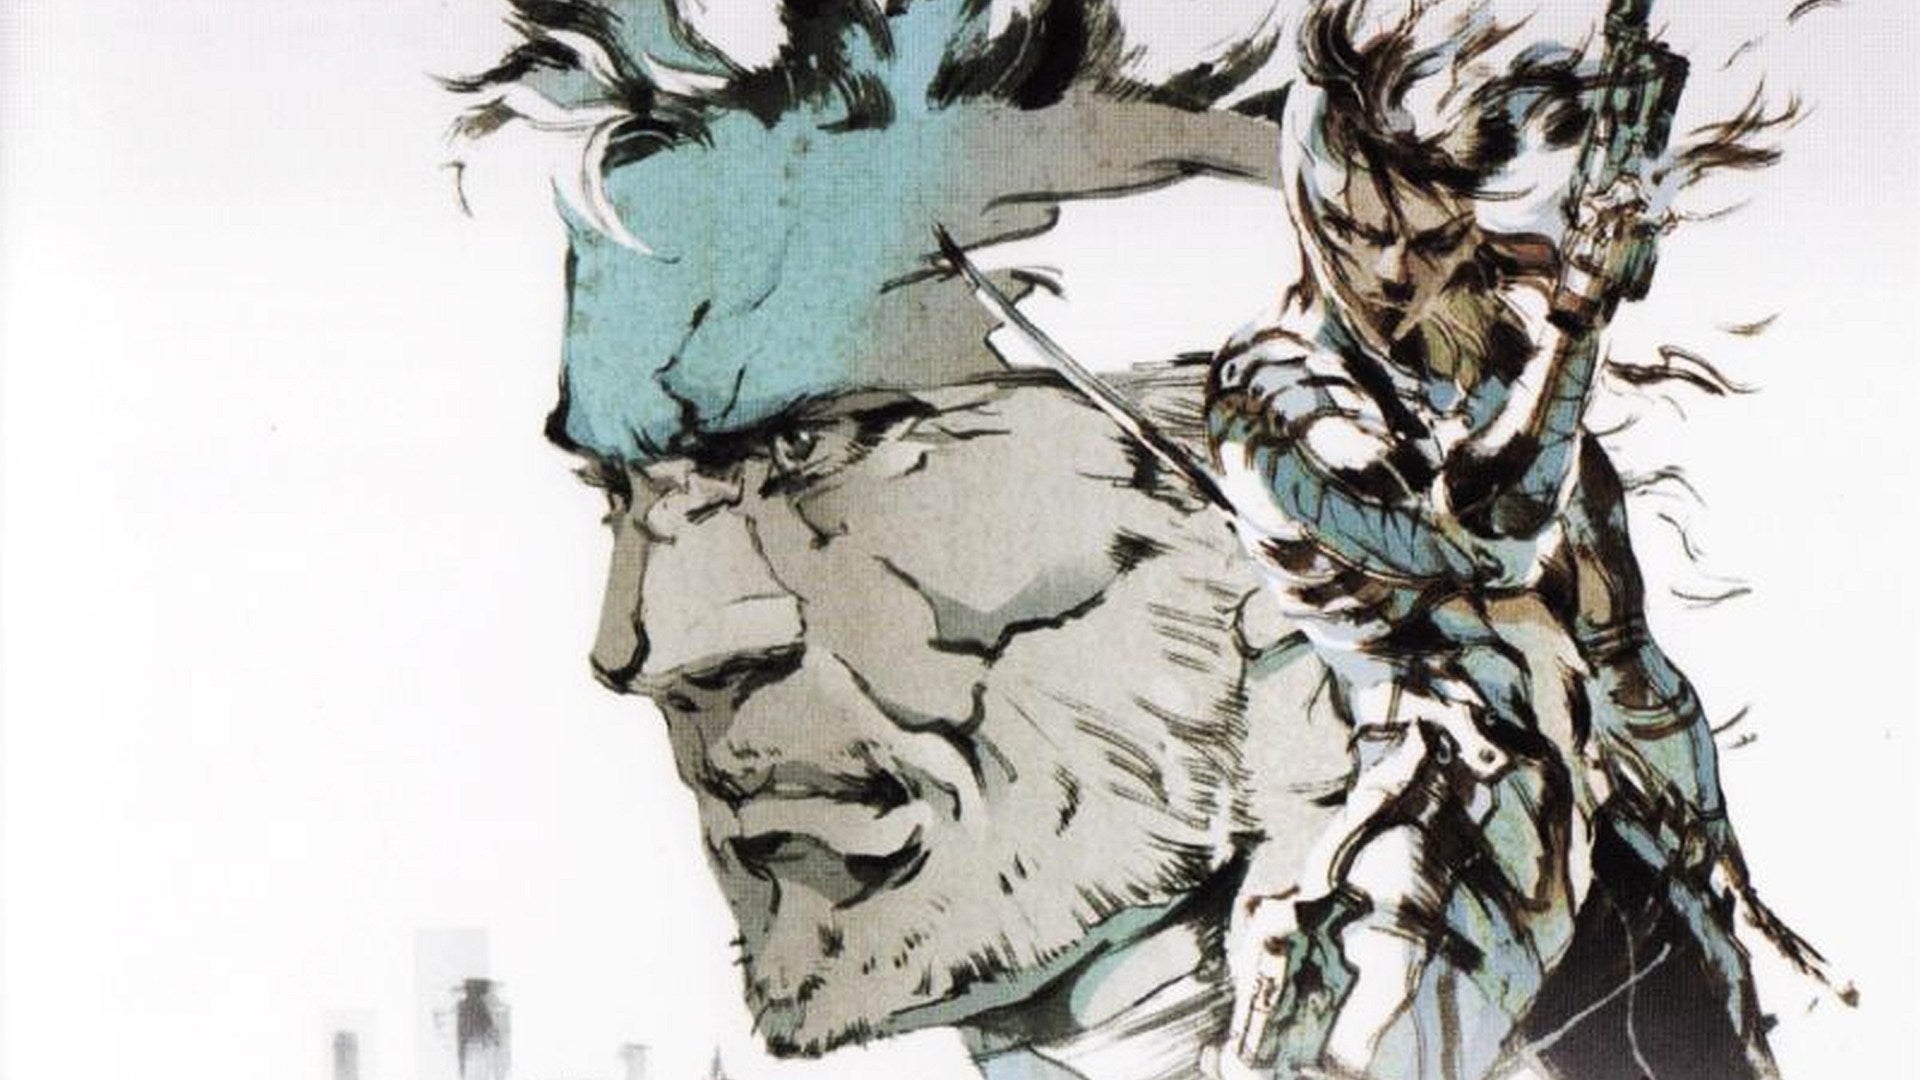 Bilder zu Metal Gear wird heute 35! Ich nehme mir den Moment dieser herausragenden Reihe zu gedenken!